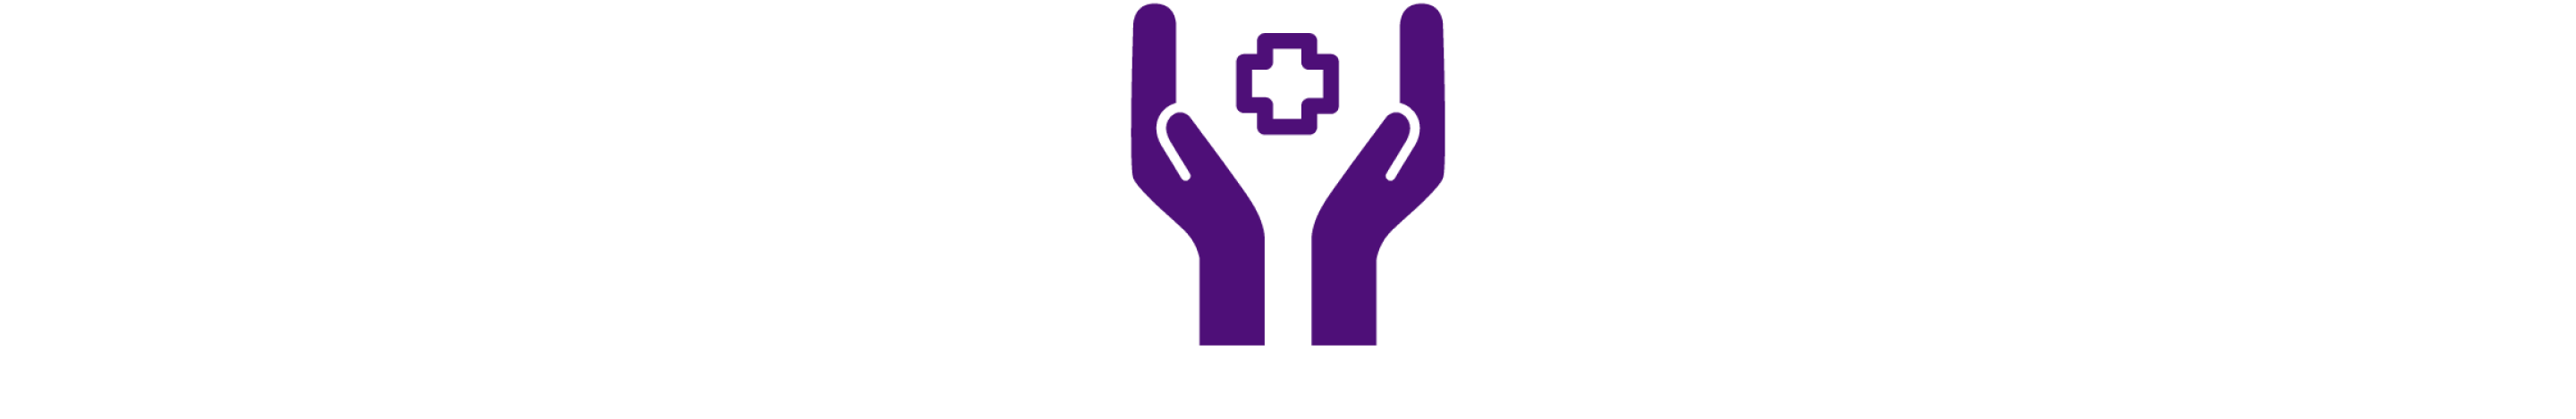 Icona viola scuro di mani aperte con un logo medico tra i palmi.